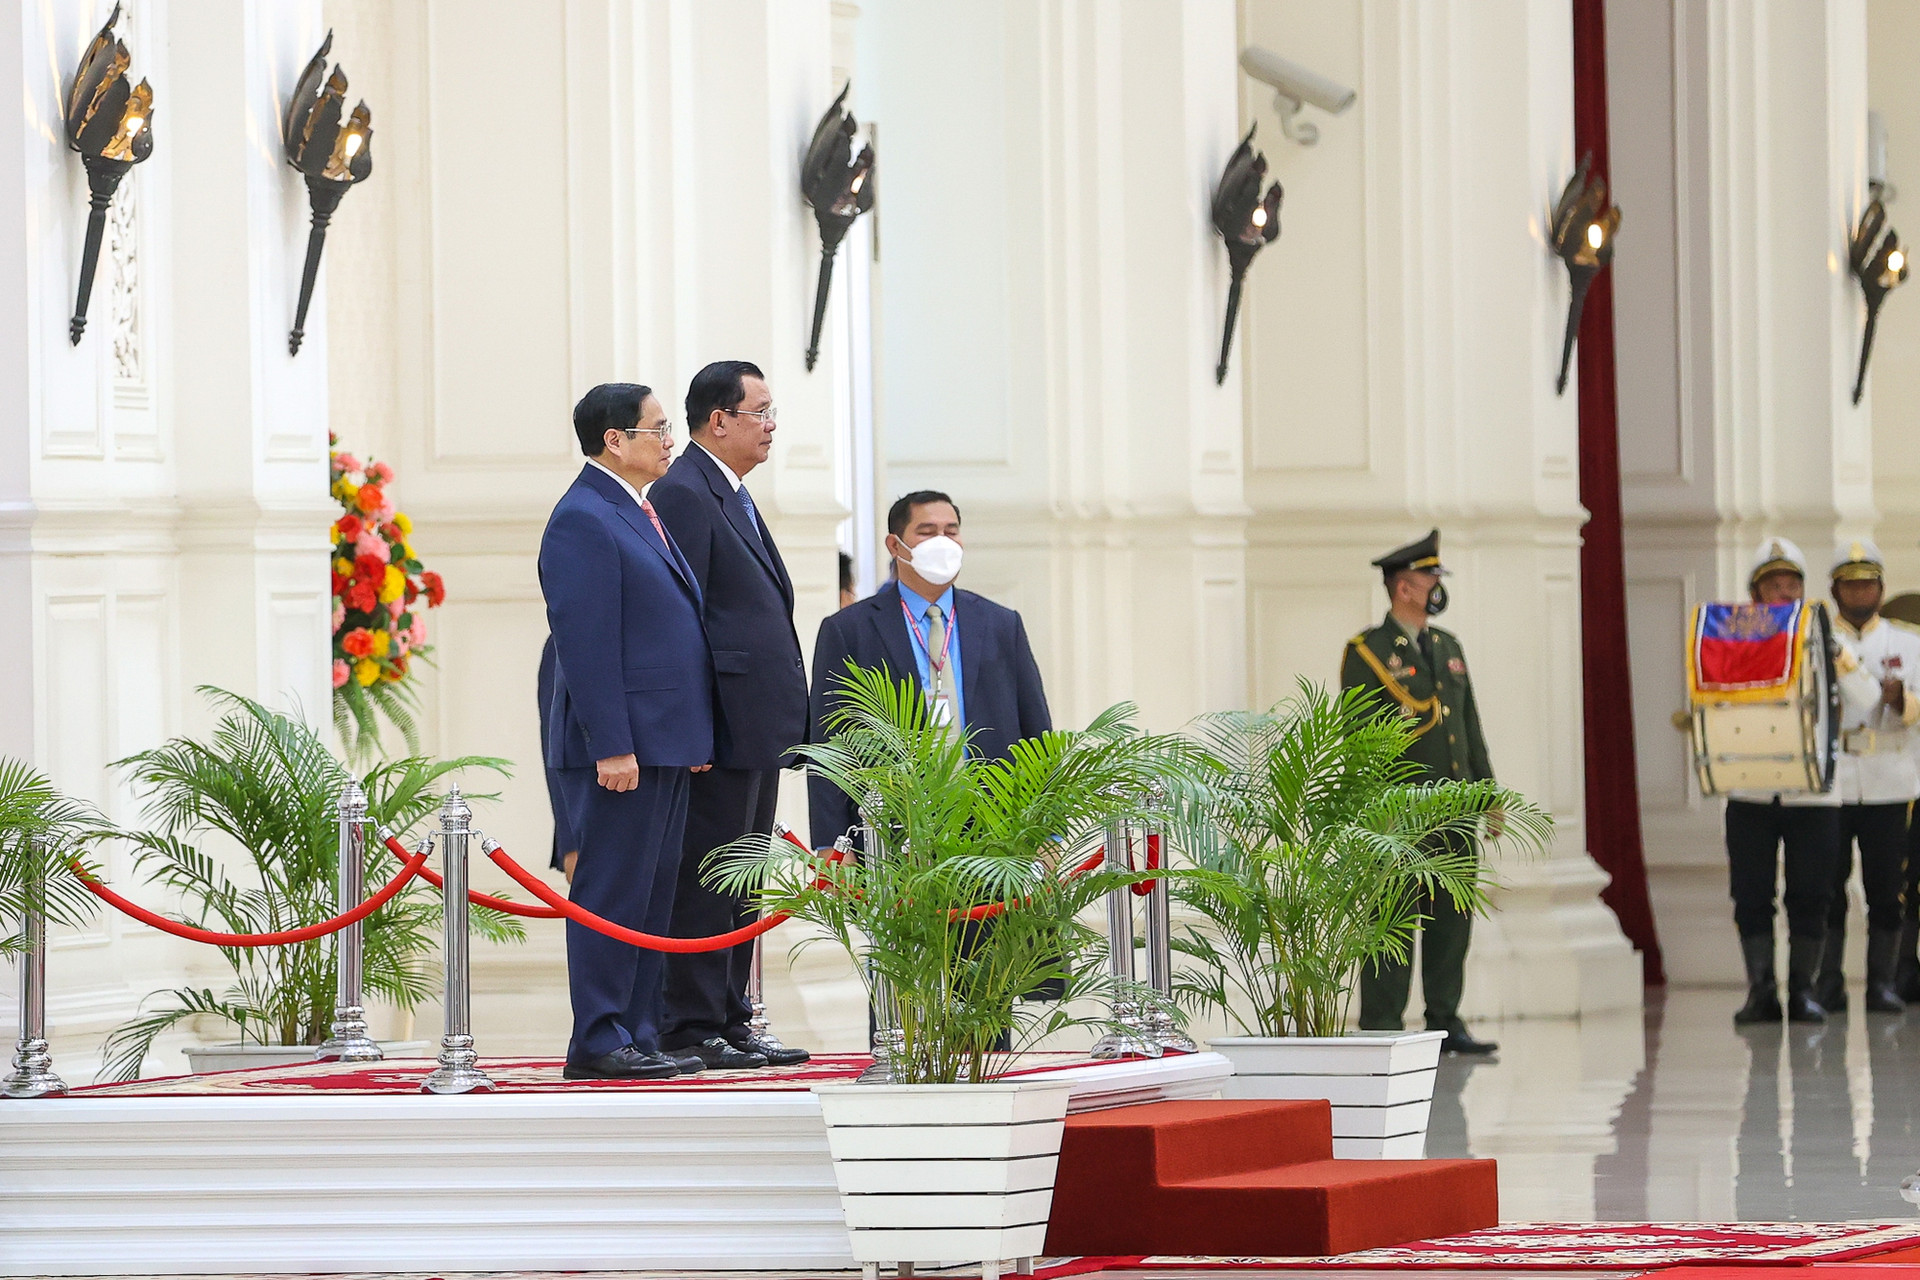 Chùm ảnh: Lễ đón chính thức Thủ tướng Phạm Minh Chính thăm Campuchia - Ảnh 2.